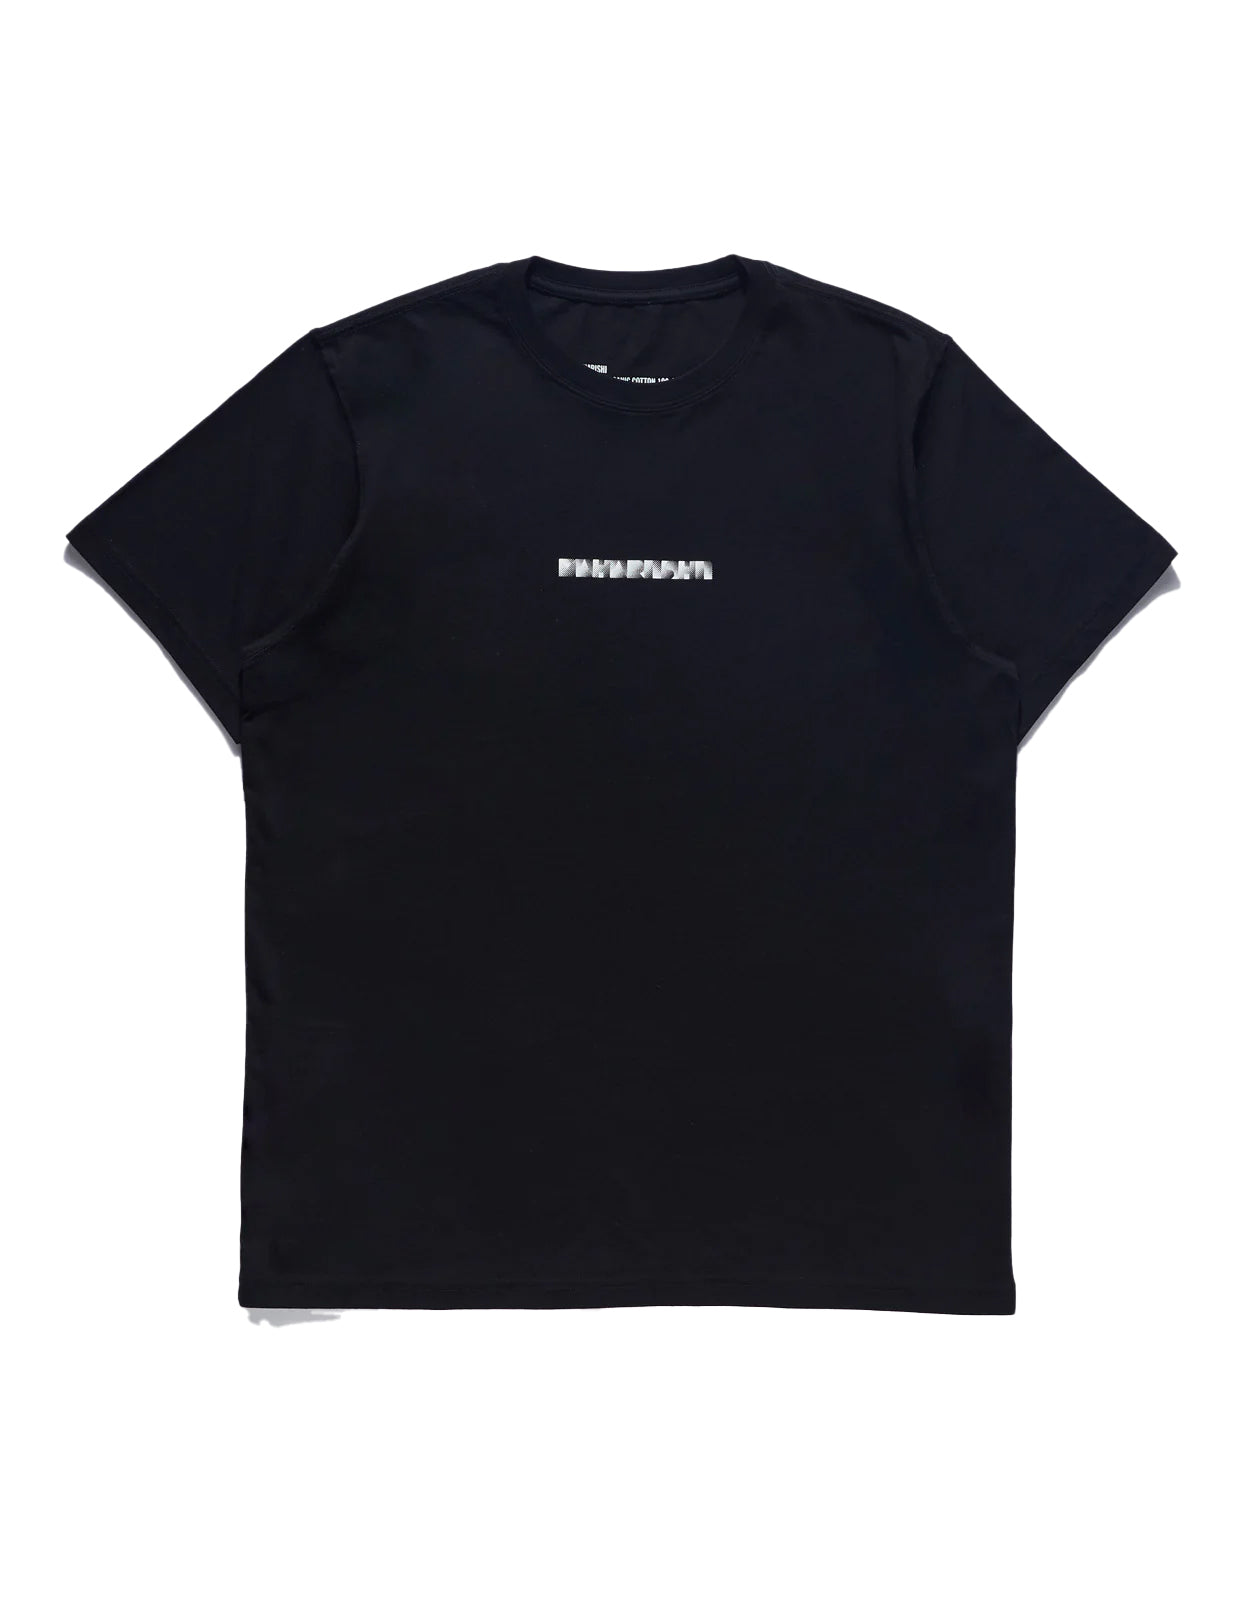 Maharishi Pointillist Maharishi T-Shirt Black